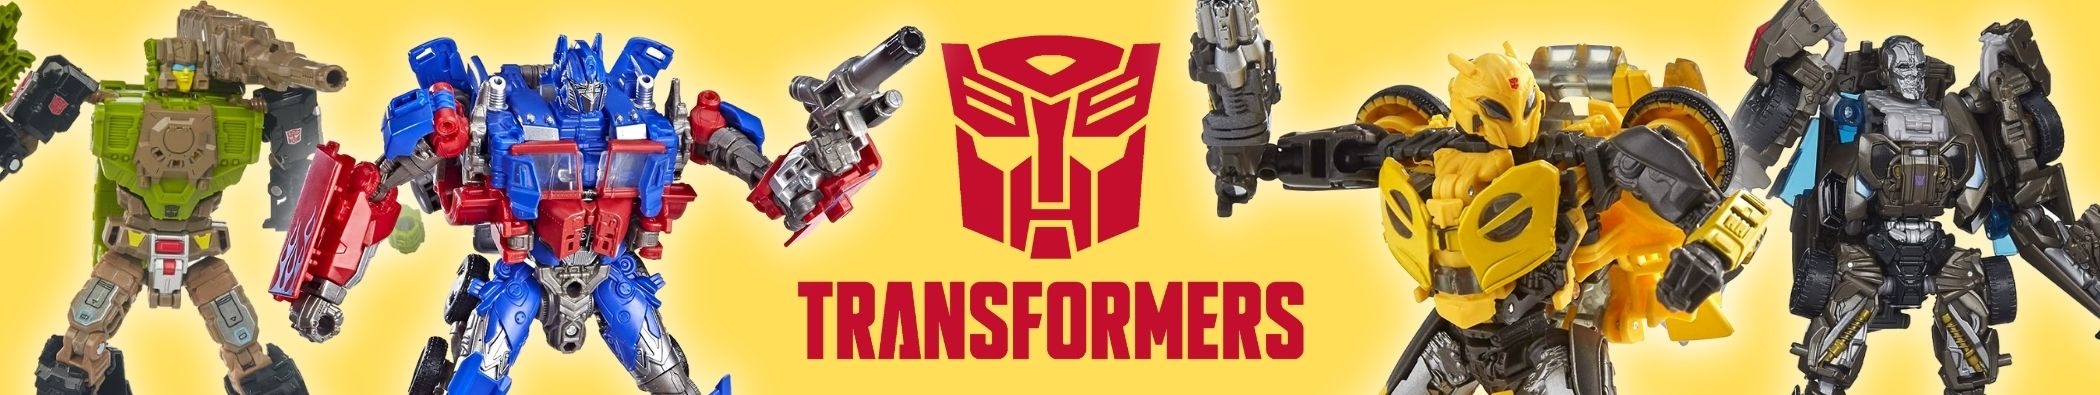 Muñecos y Figuras Transformers